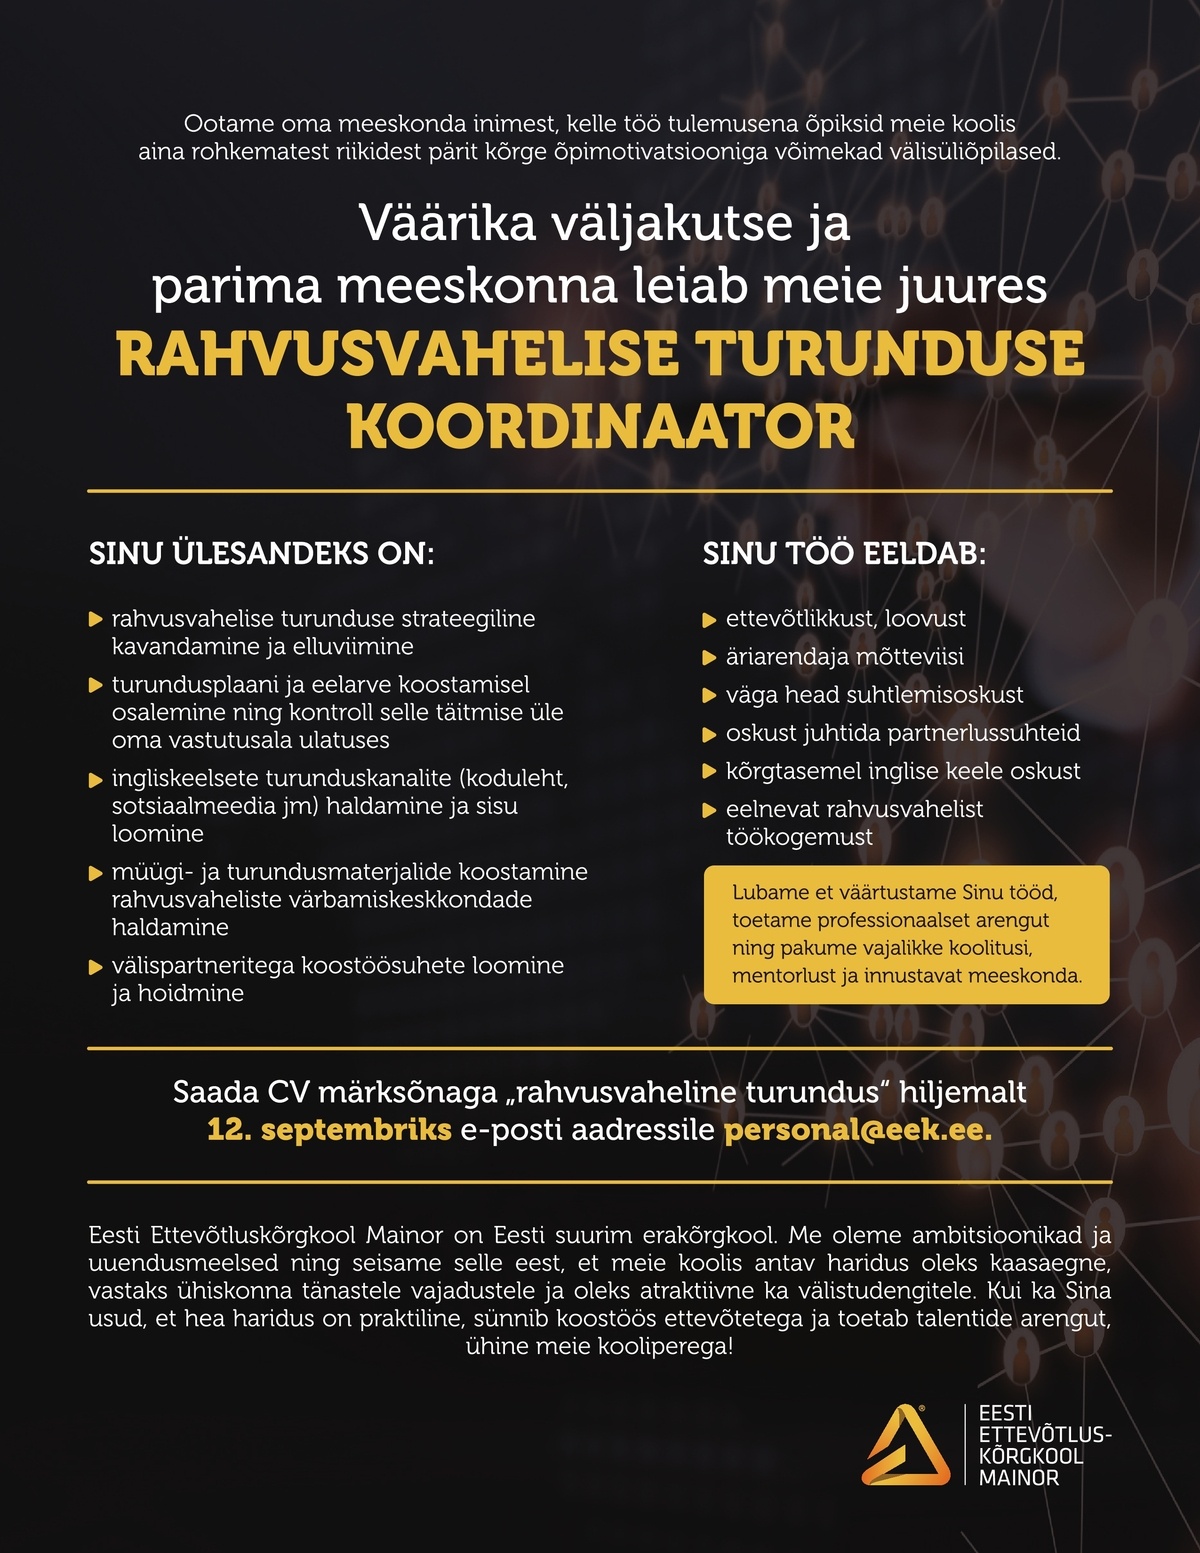 Eesti Ettevõtluskõrgkool Mainor AS Rahvusvahelise turunduse koordinaator